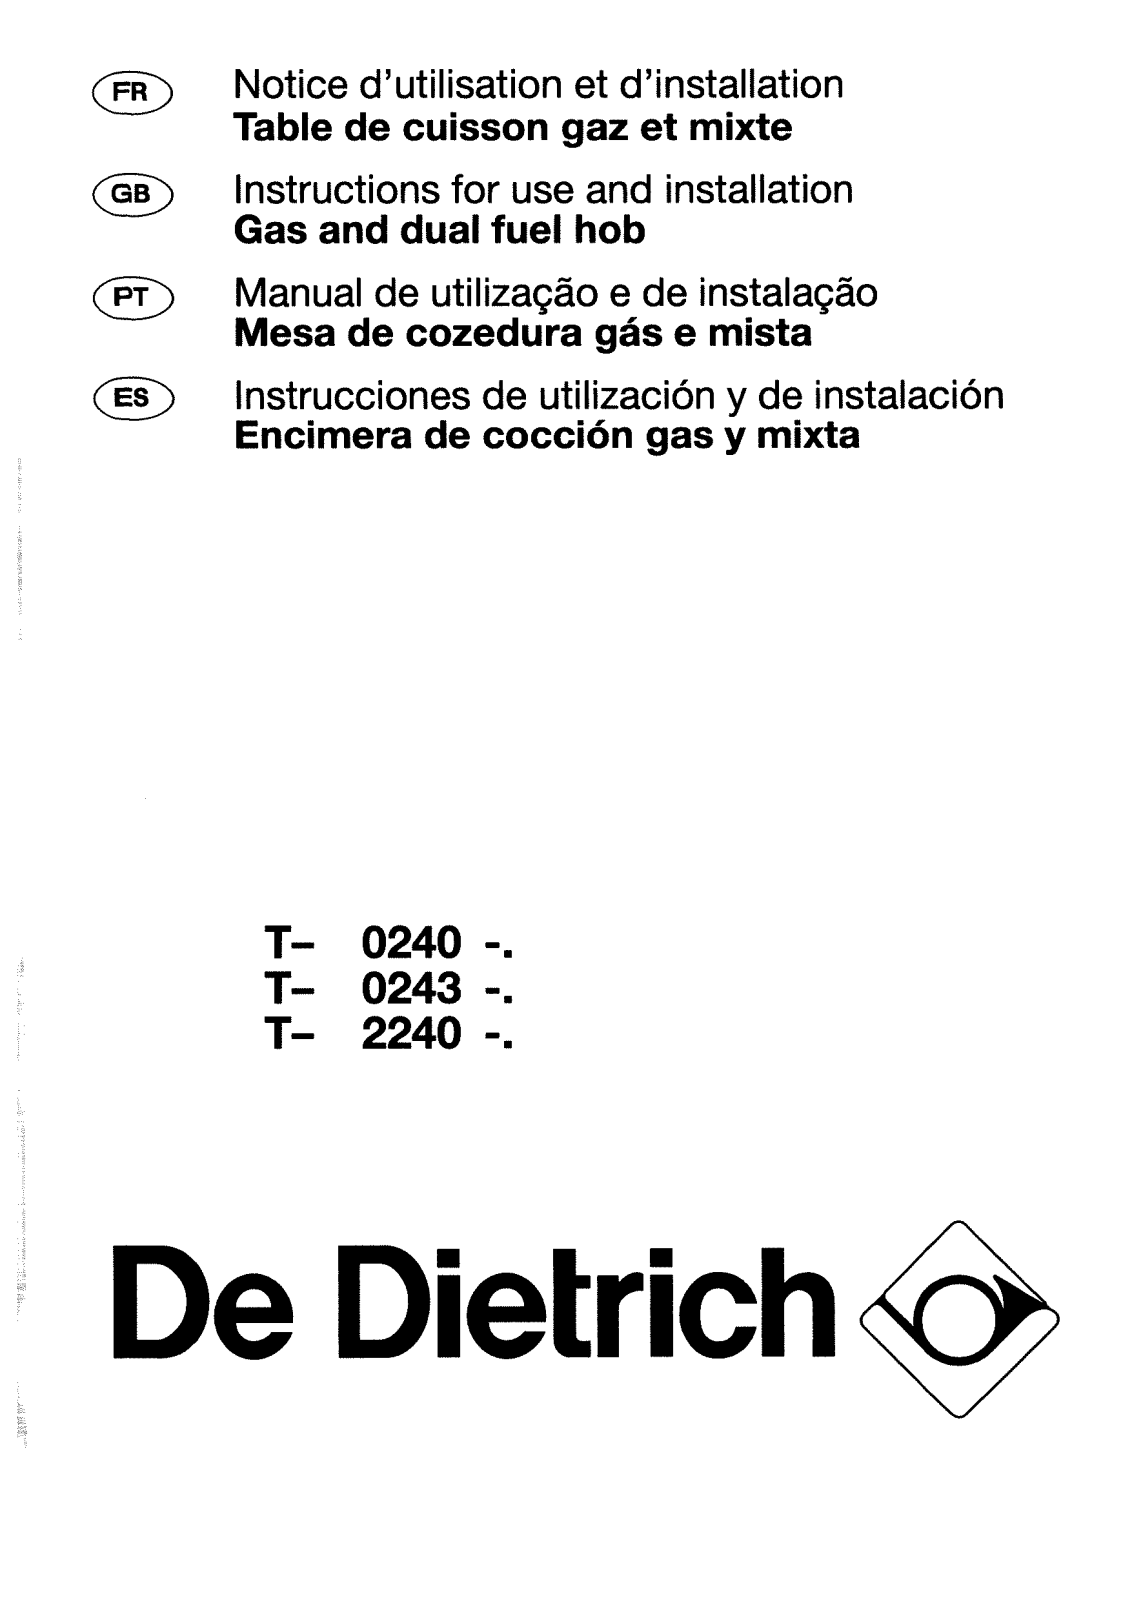 De dietrich TM2240E1, TM2243E1, TM0240E1 User Manual